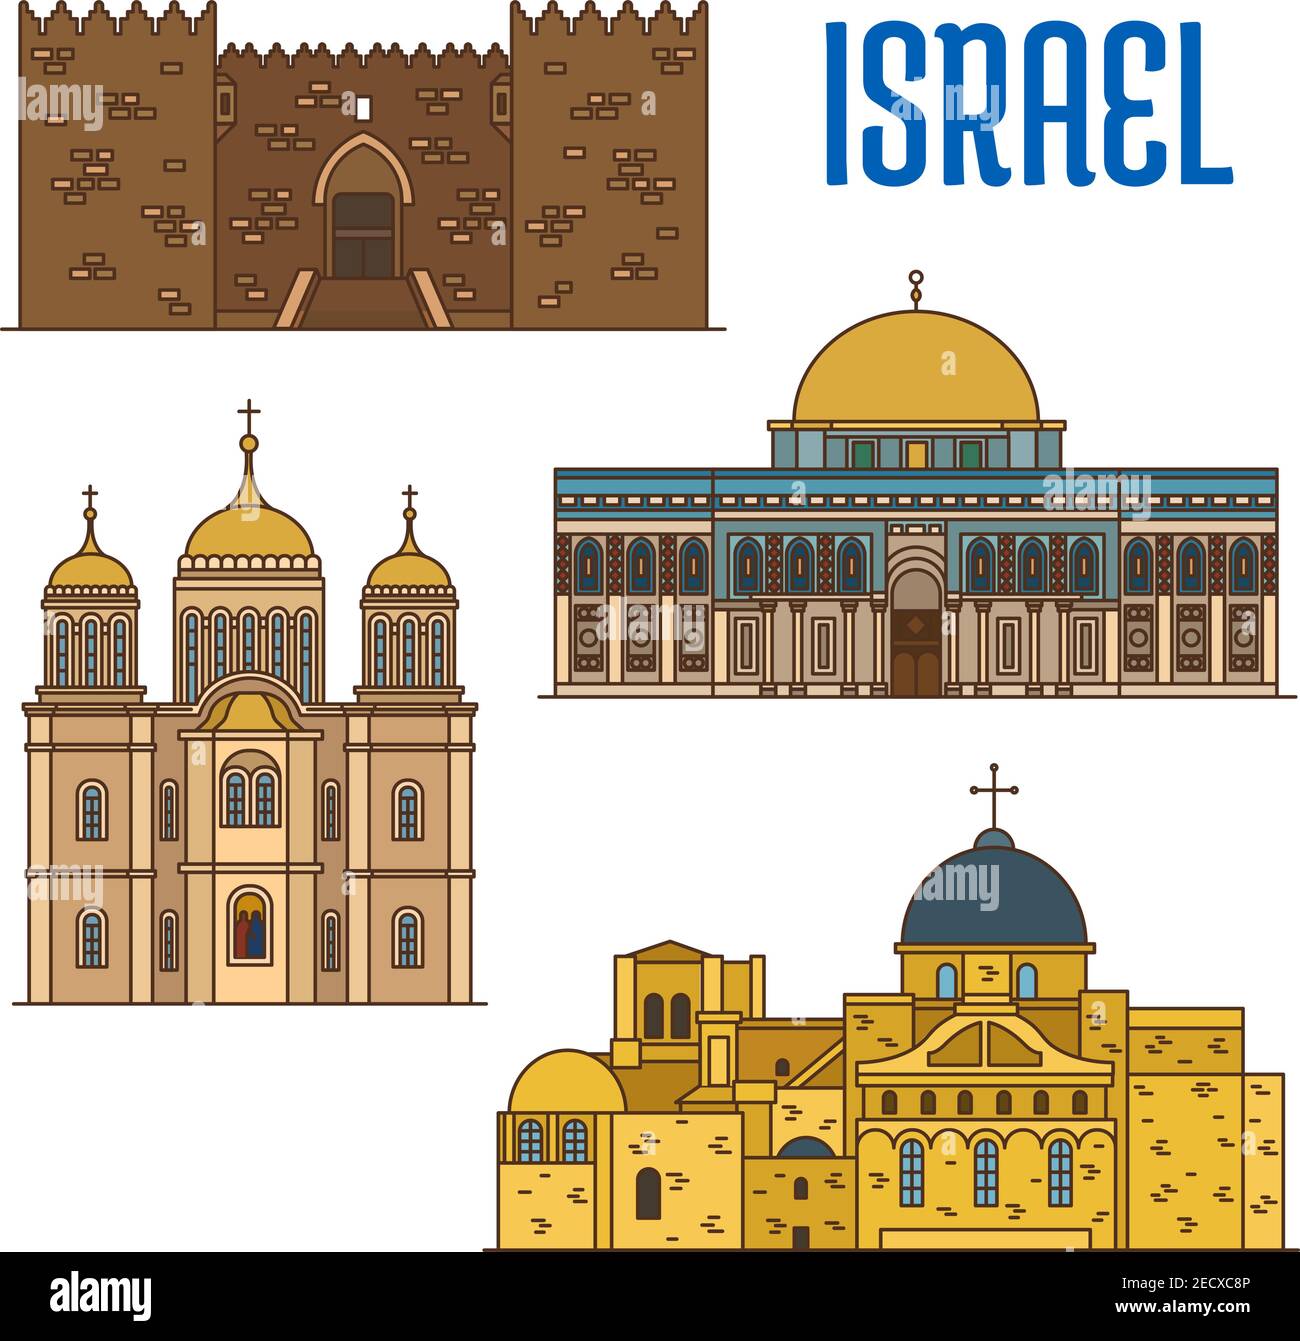 Israel vector detallada arquitectura iconos de la Puerta de Damasco, Mezquita al-Aqsa, Monasterio Ein Karem, Iglesia del Santo Sepulcro. Lugares de interés israelí symb Ilustración del Vector